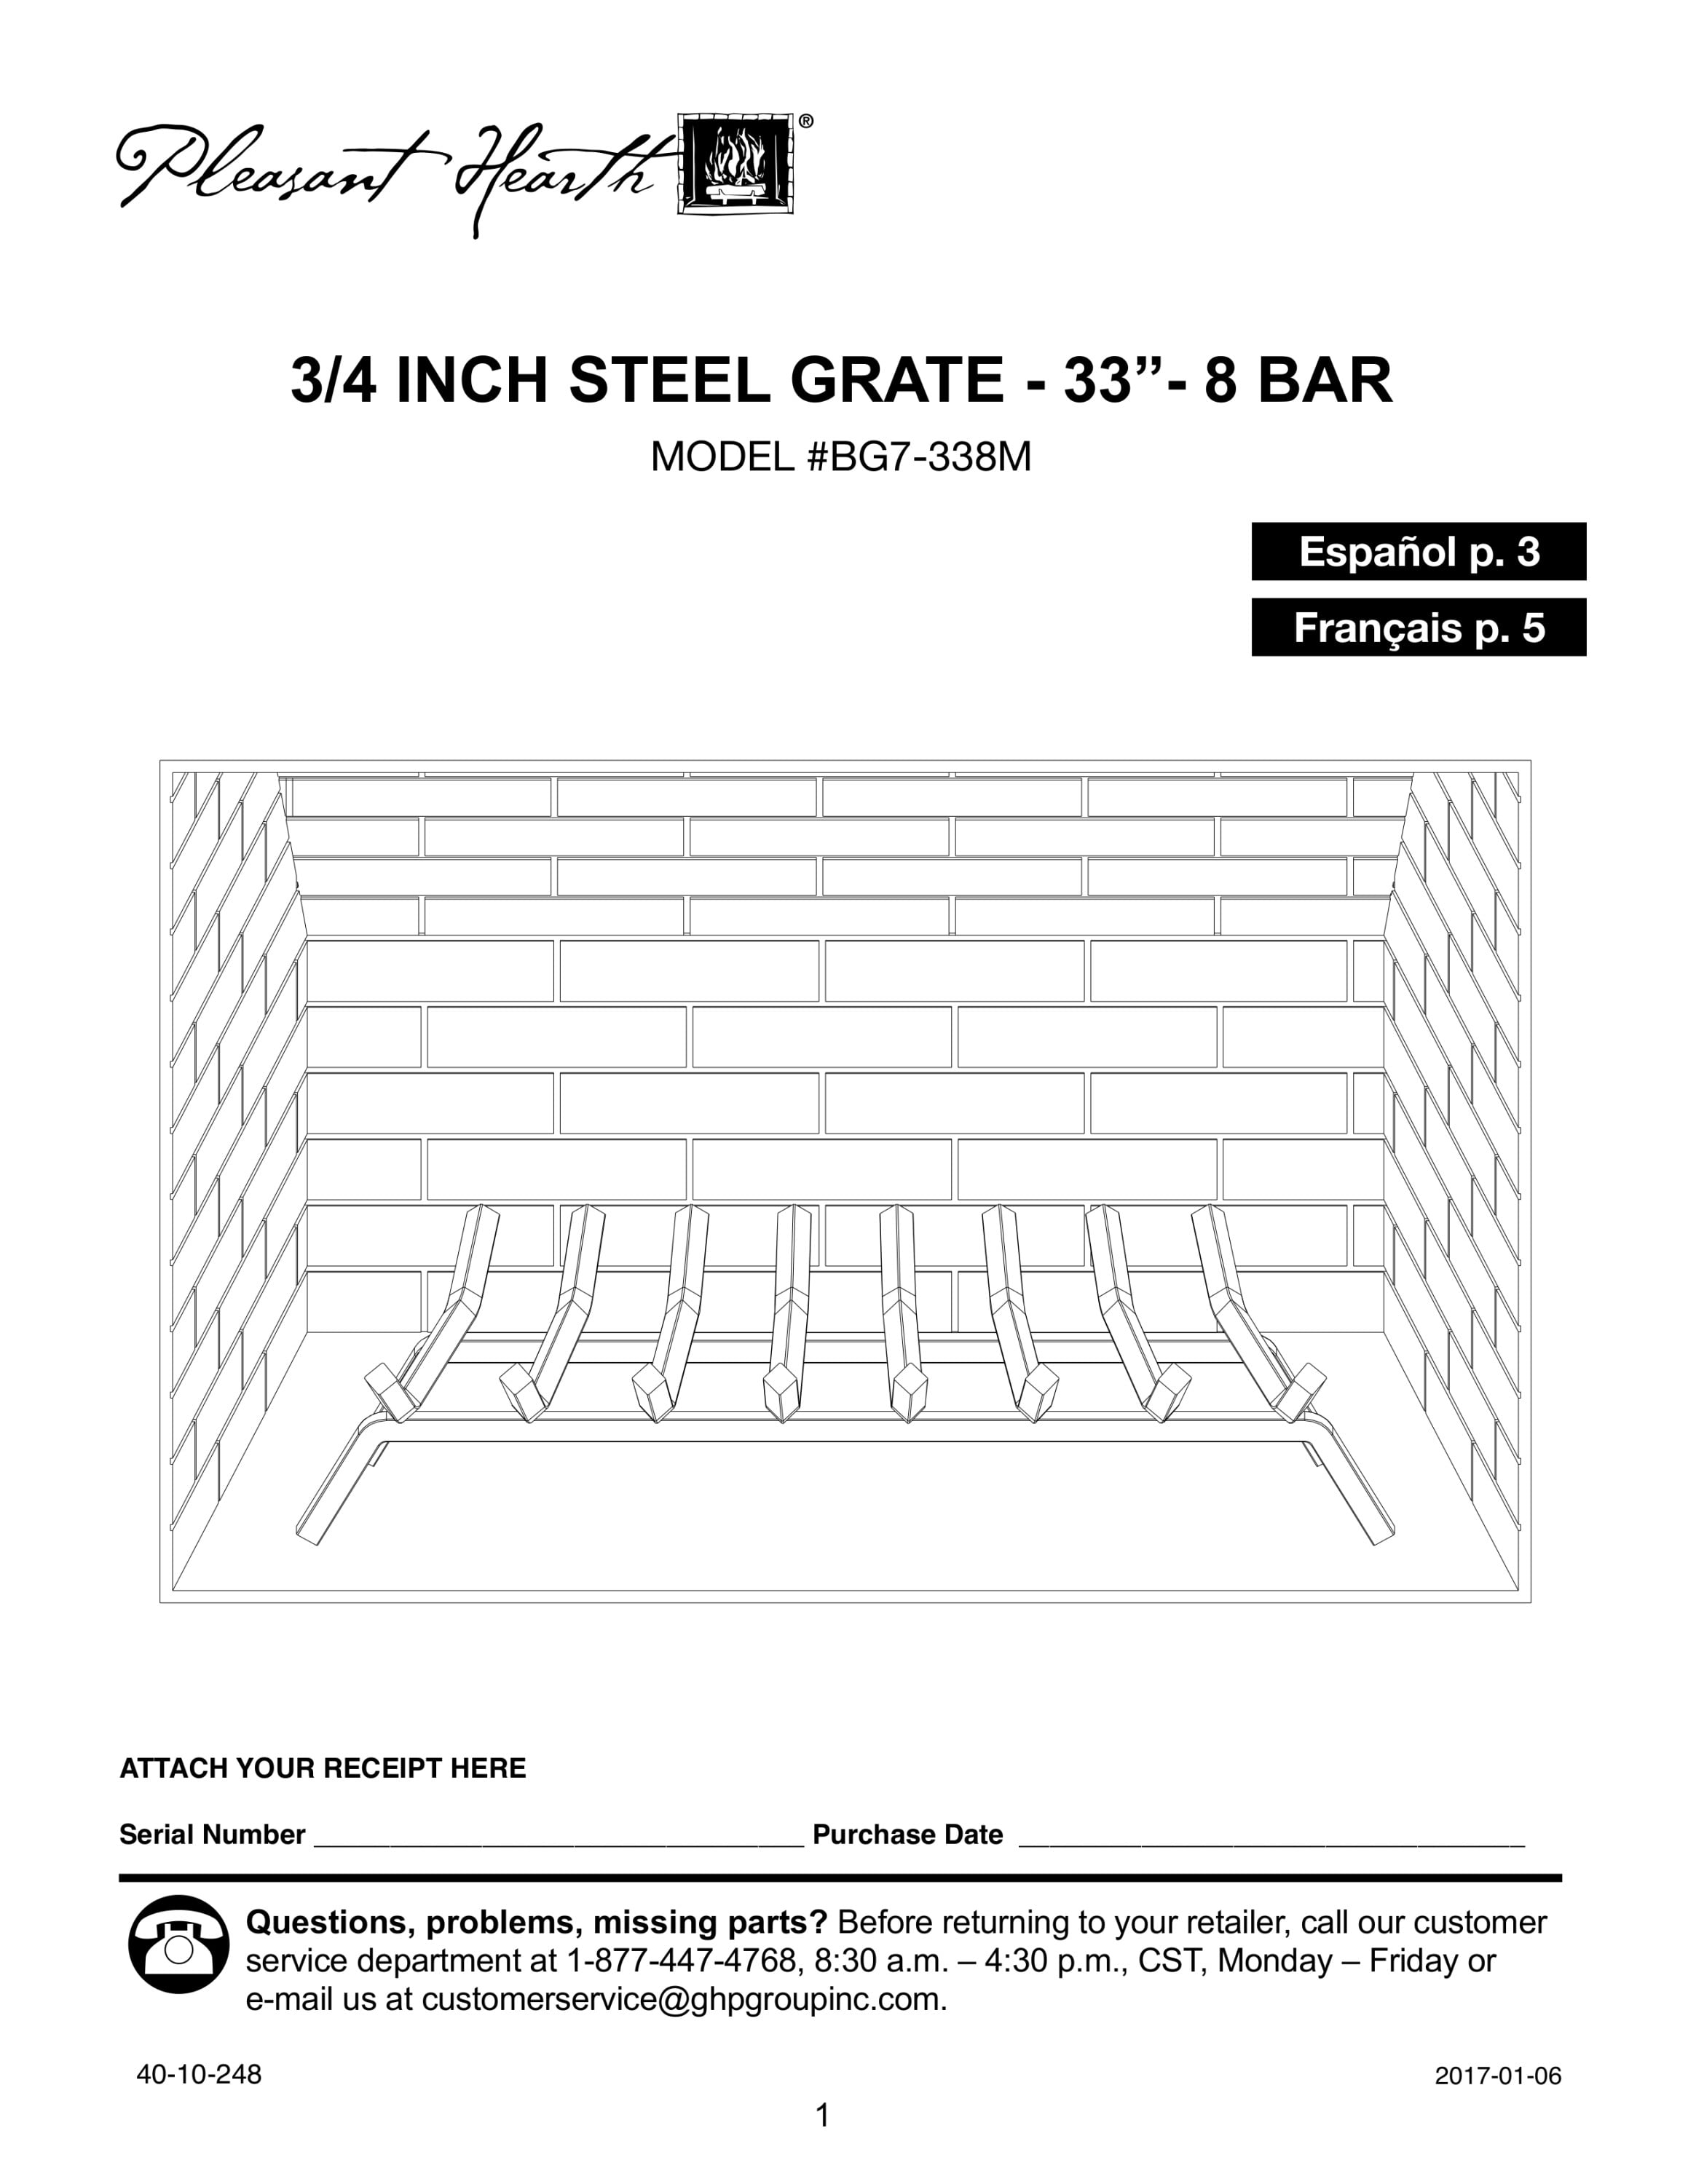 Pleasant Hearth Fireplace Grate 3/4 in 8-Bar Heavy-Duty Steel 33 in 